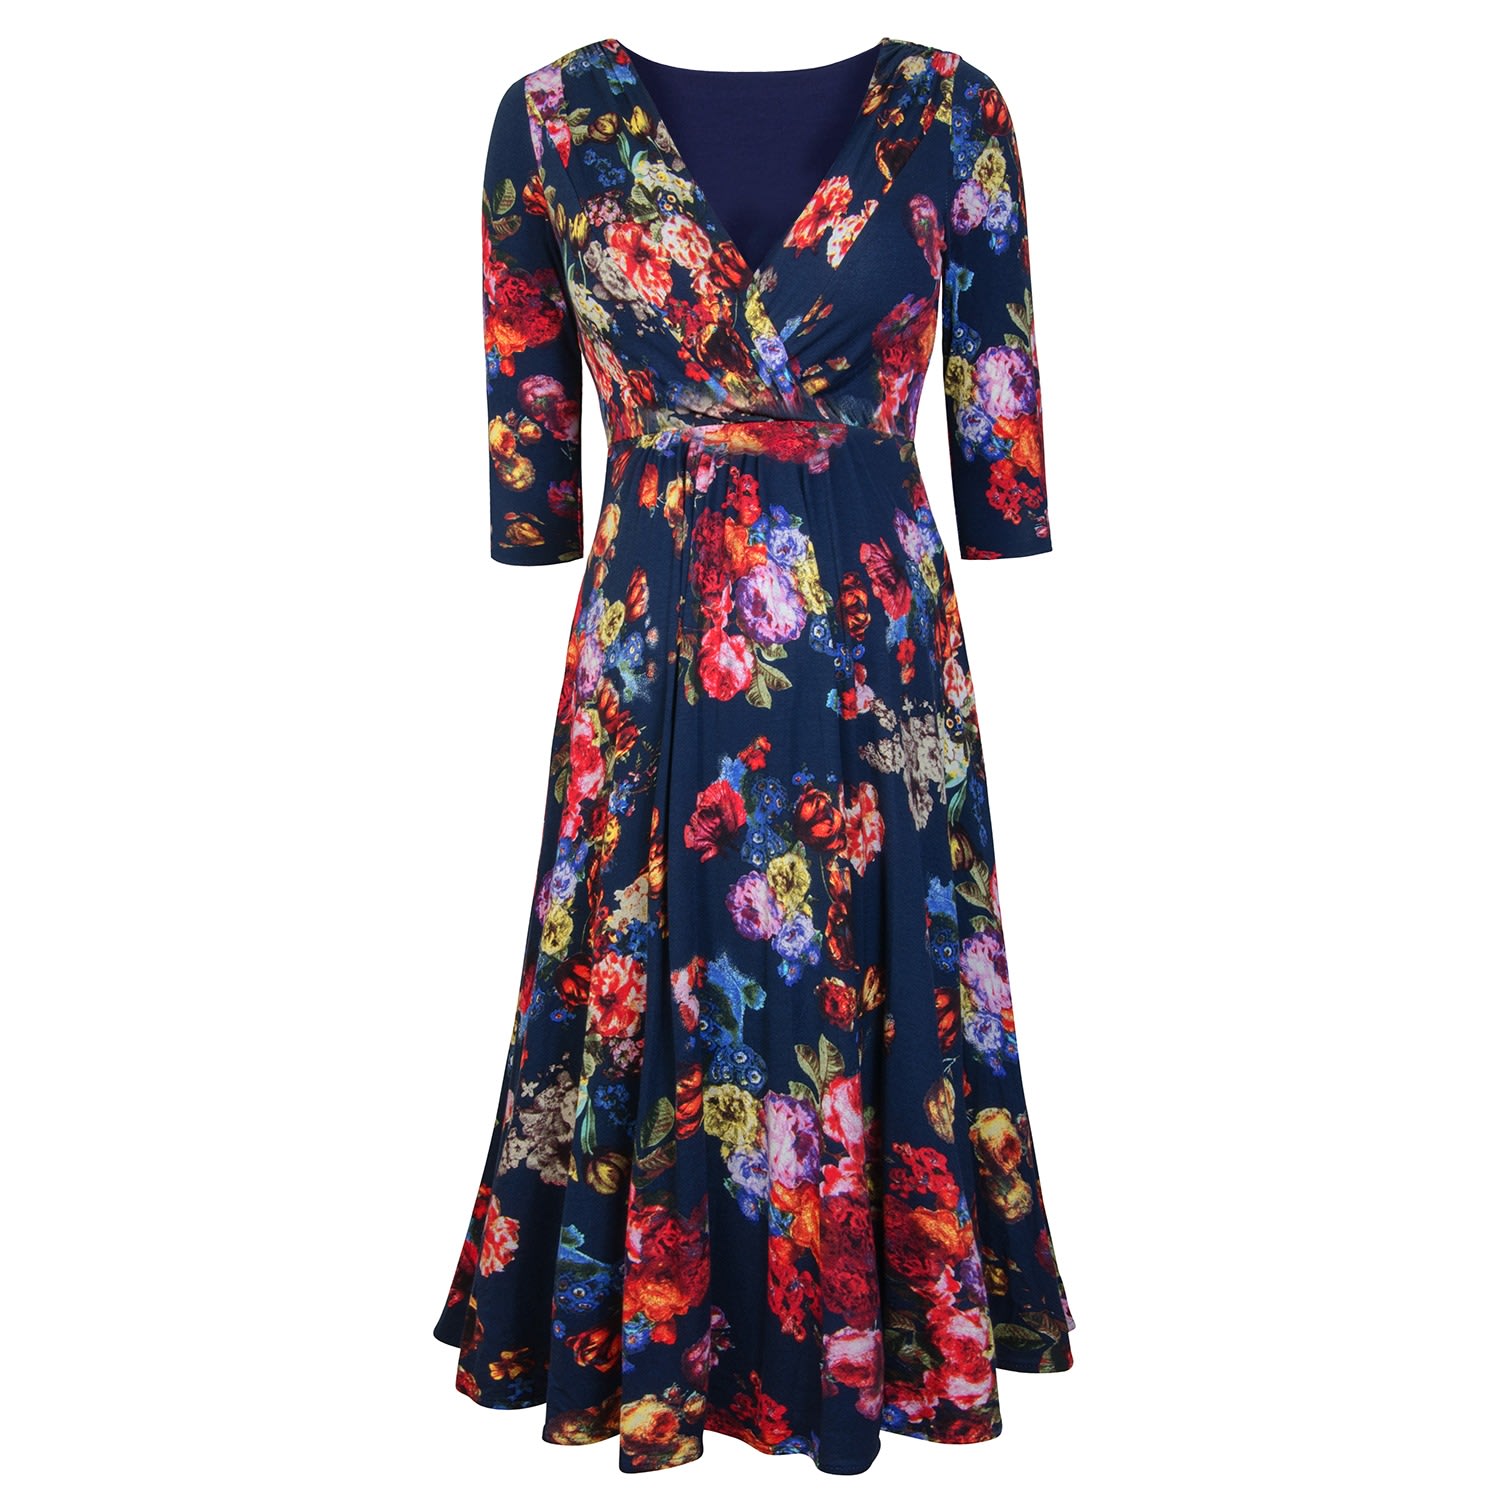 Women’s Annie Dress In Midnight Garden Floral Xl/Xxl Alie Street London